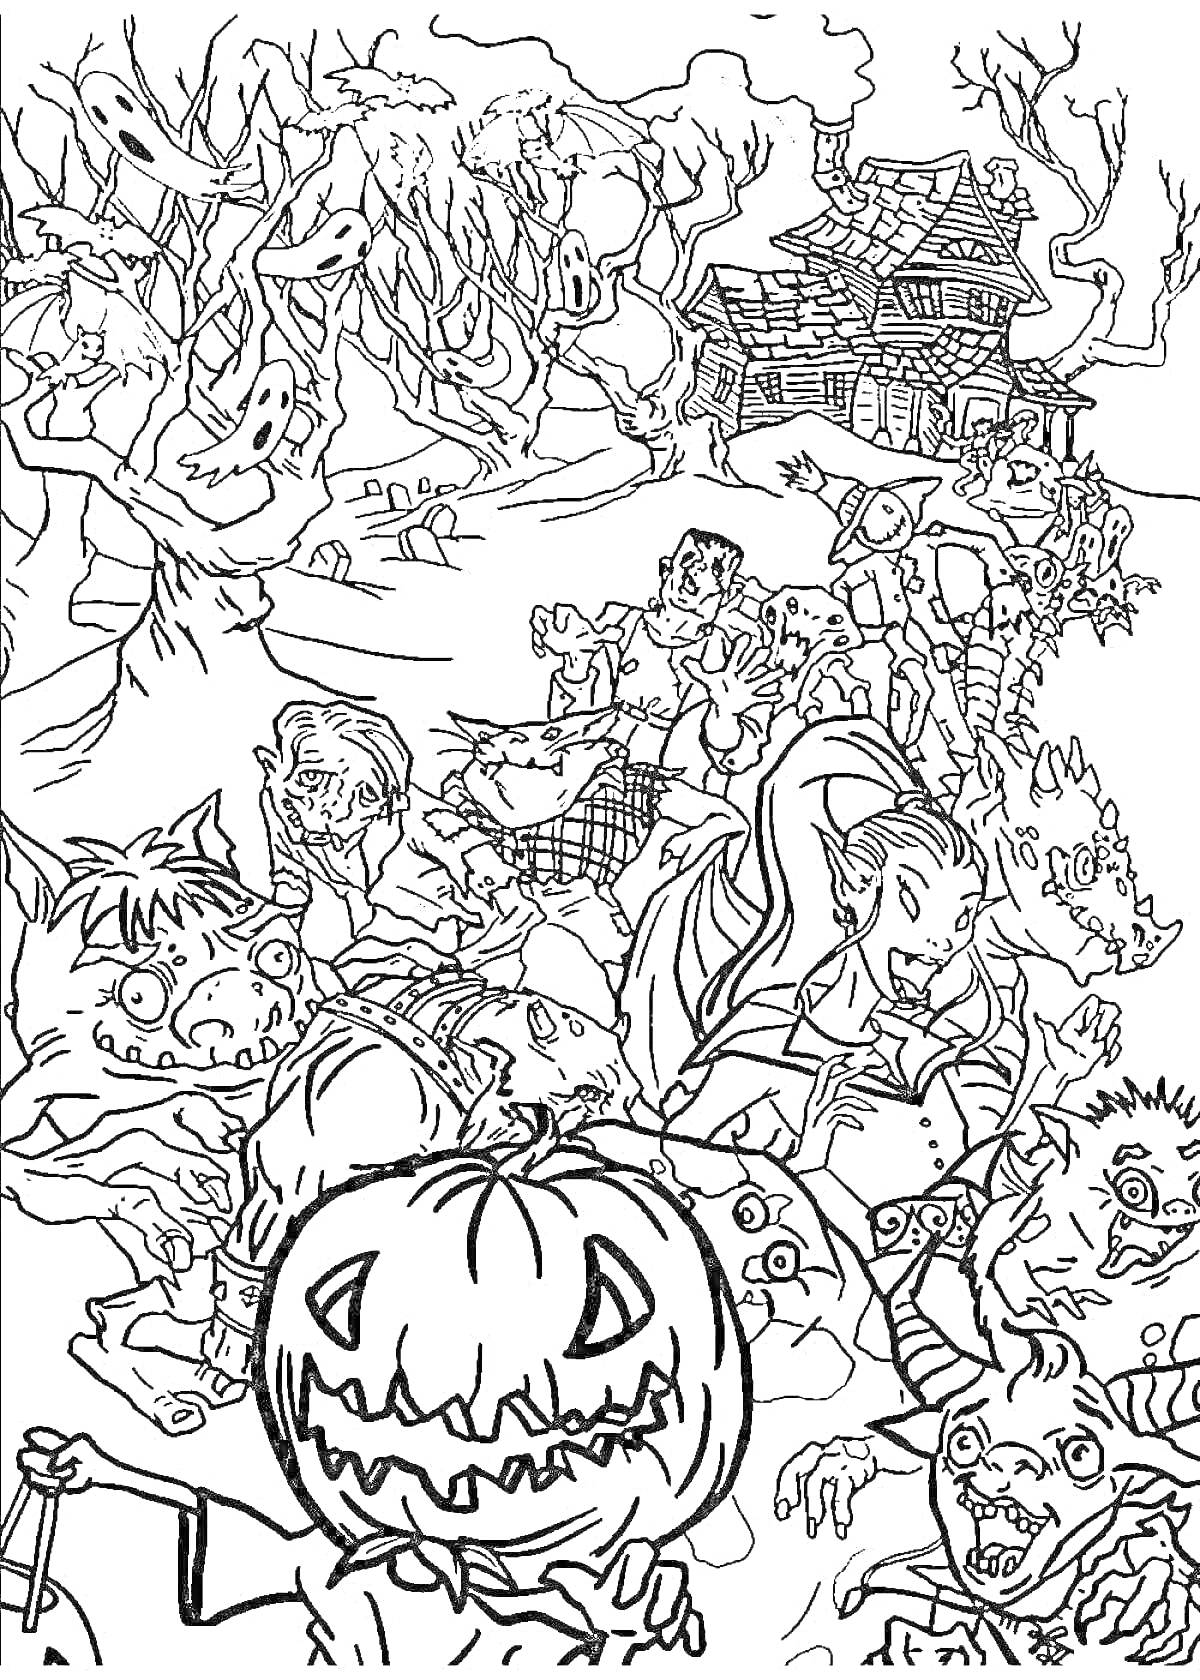 РаскраскаХэллоуинская сцена с привидениями, монстрами, тыквой, старым домом и деревьями